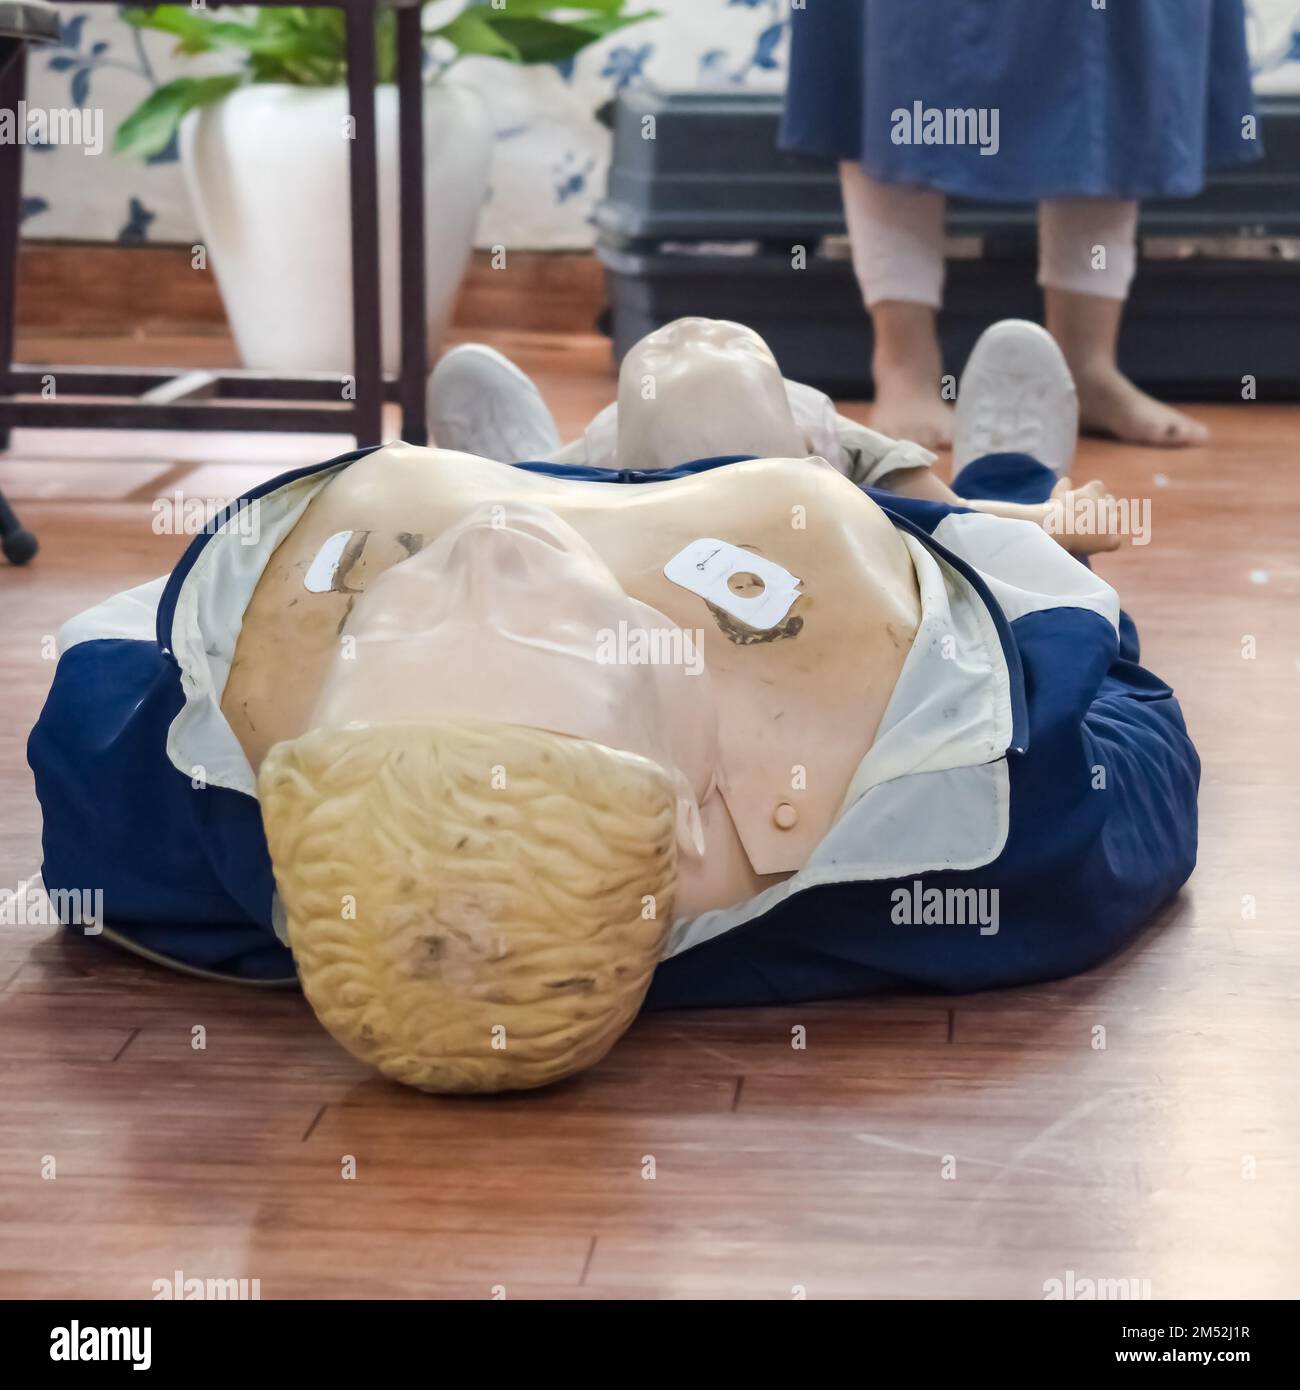 Le mannequin humain se trouve sur le sol pendant la formation de premiers soins - réanimation cardio-pulmonaire. Cours de premiers soins sur le mannequin de RCP, concept de formation aux premiers soins de RCP Banque D'Images